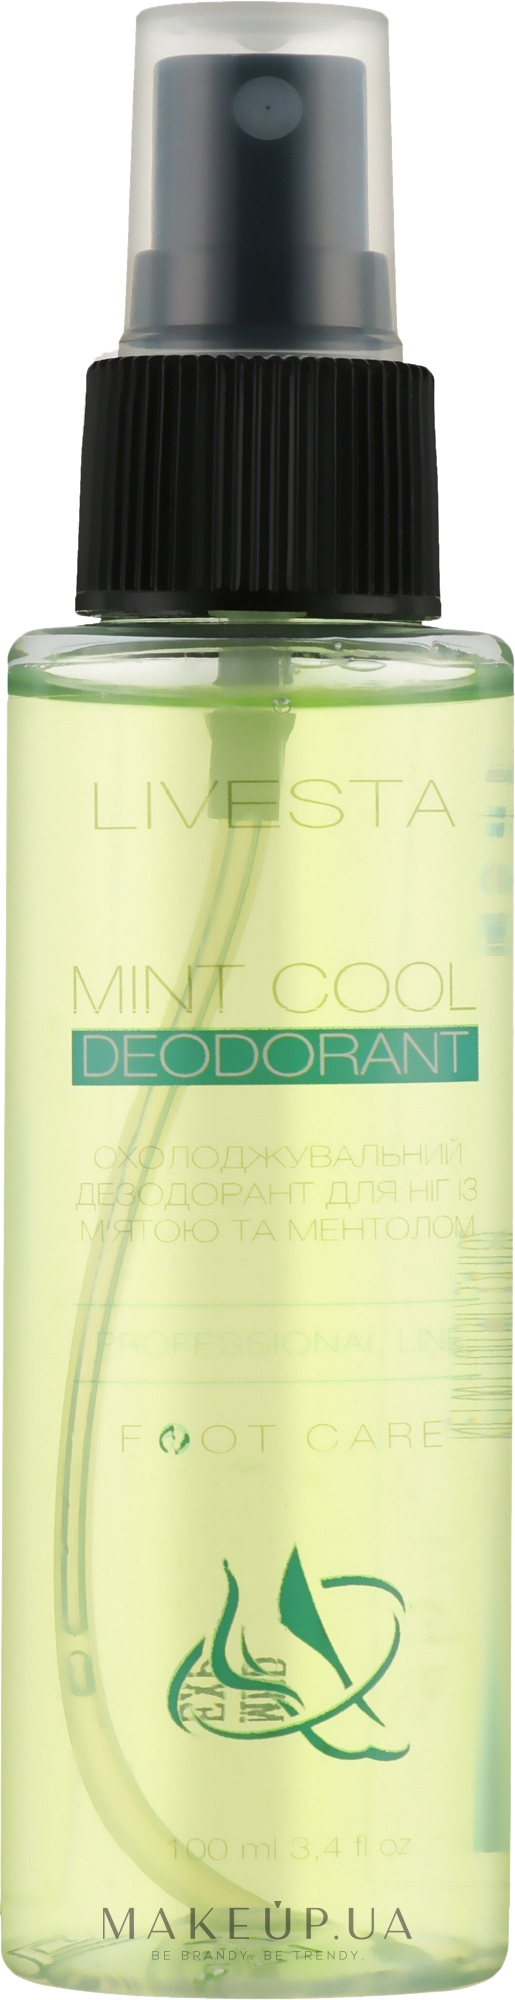 Охлаждающий дезодорант для ног с мятой и ментолом - Livesta Mint Cool Deodorant — фото 100ml